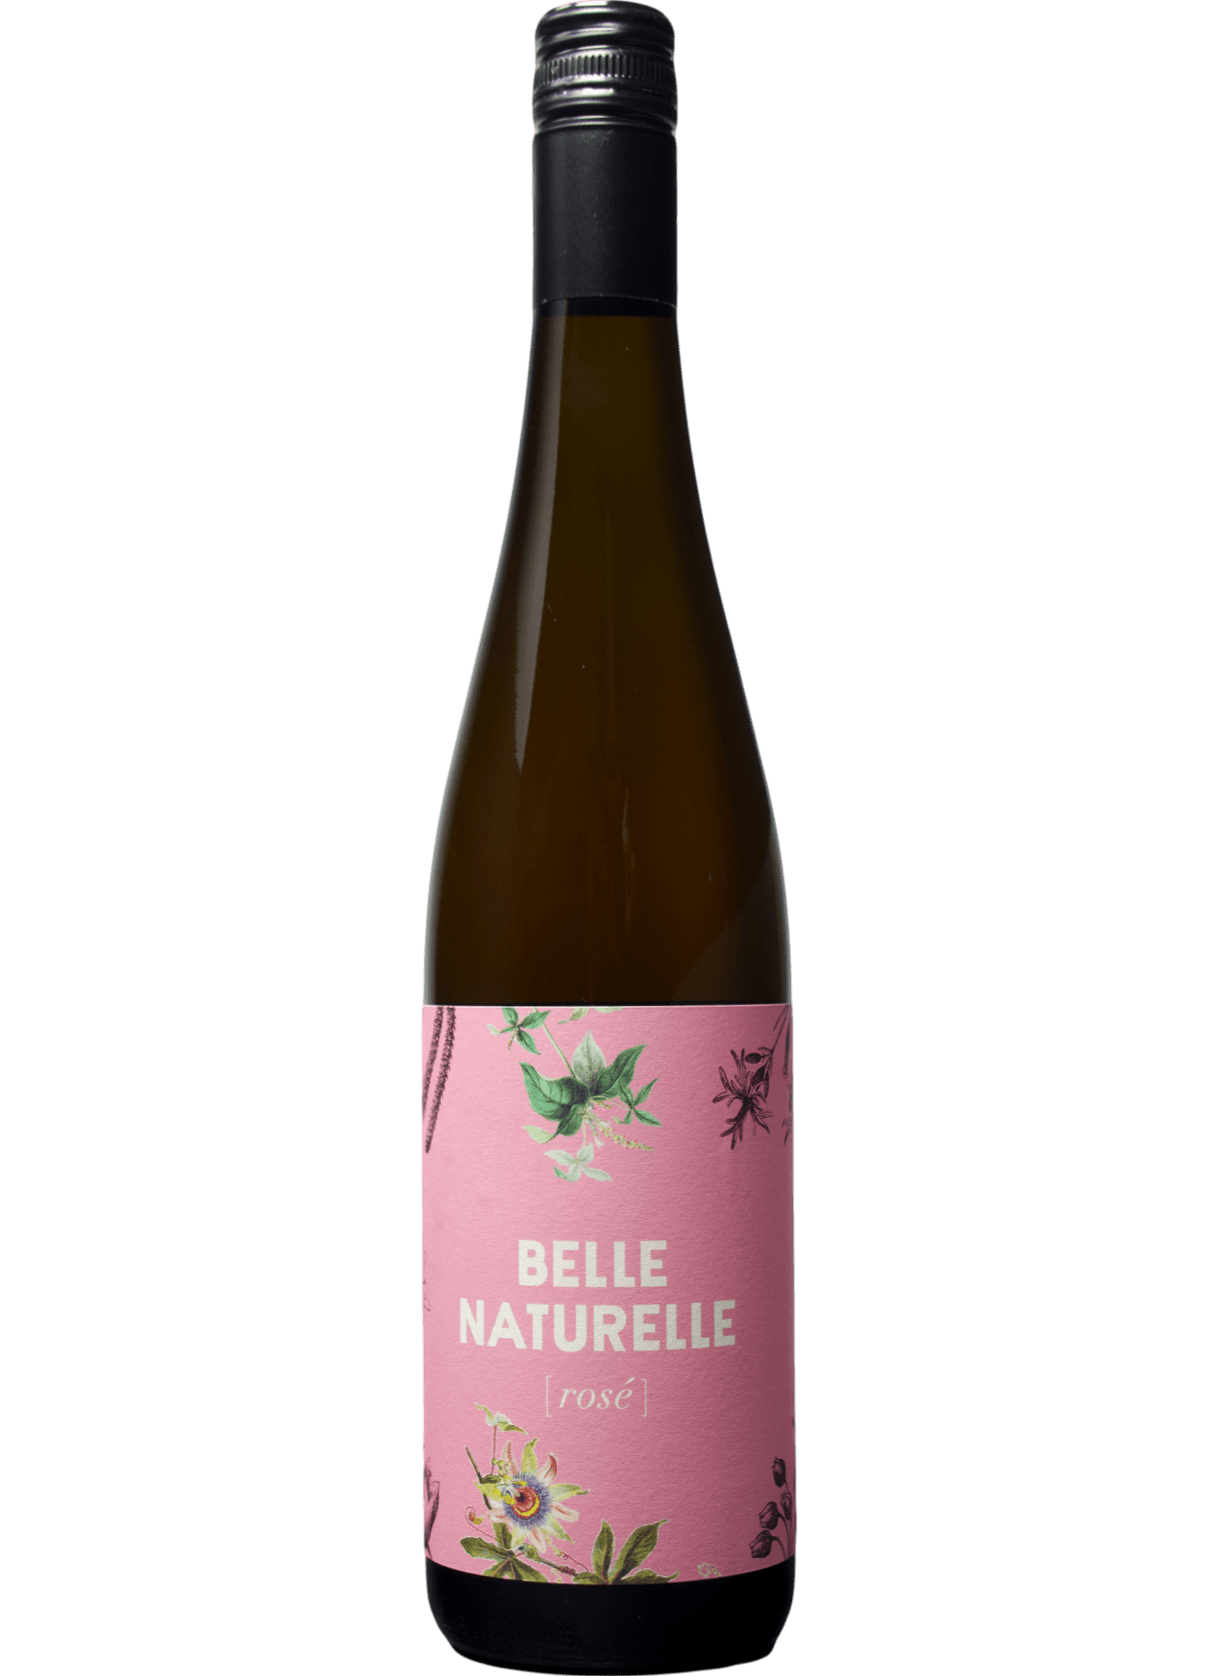 rose-belle-naturelle-2018-wine-littlewine-908464_ee2821e0-16a7-4909-8653-b81329cb657a_1218x